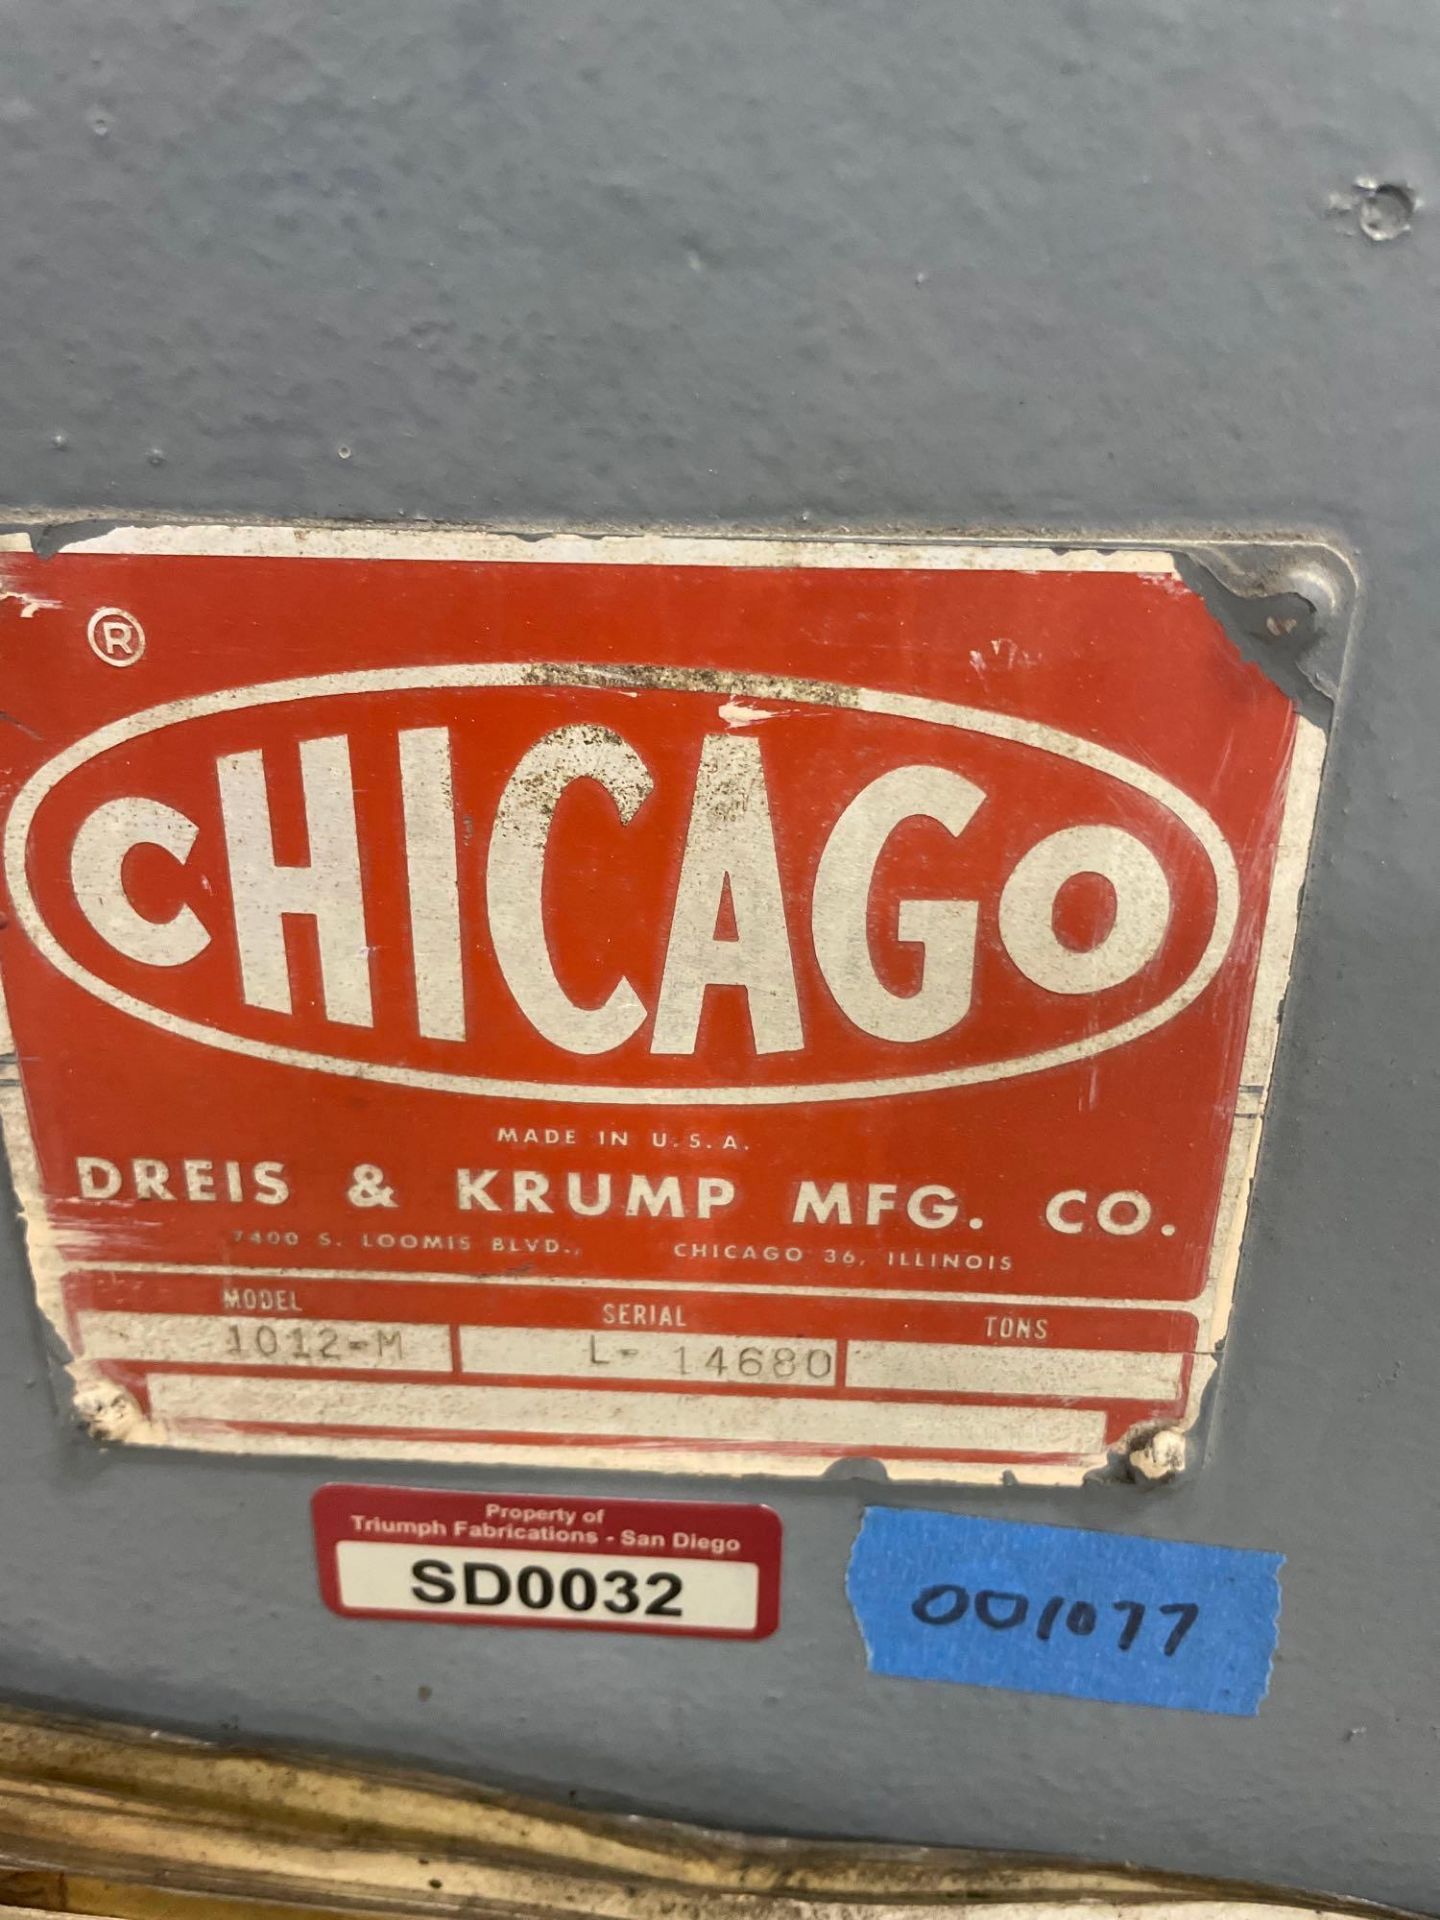 Chicago 1012-M 200 Ton Press Brake, s/n L-14680 - Image 7 of 8